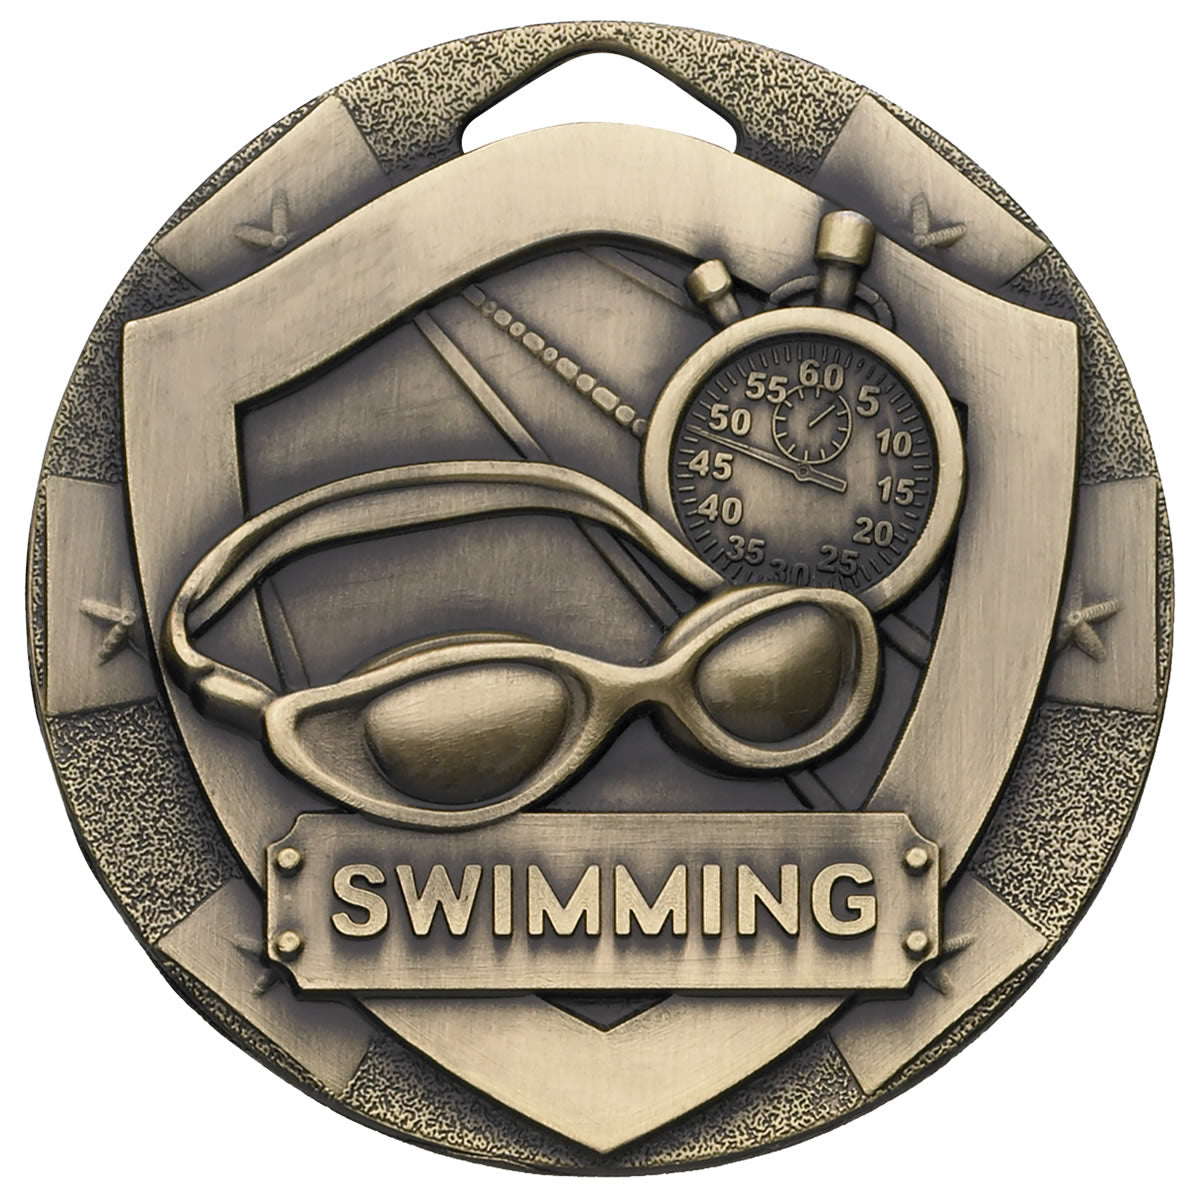 Swimming Mini Shield Medal - 50mm